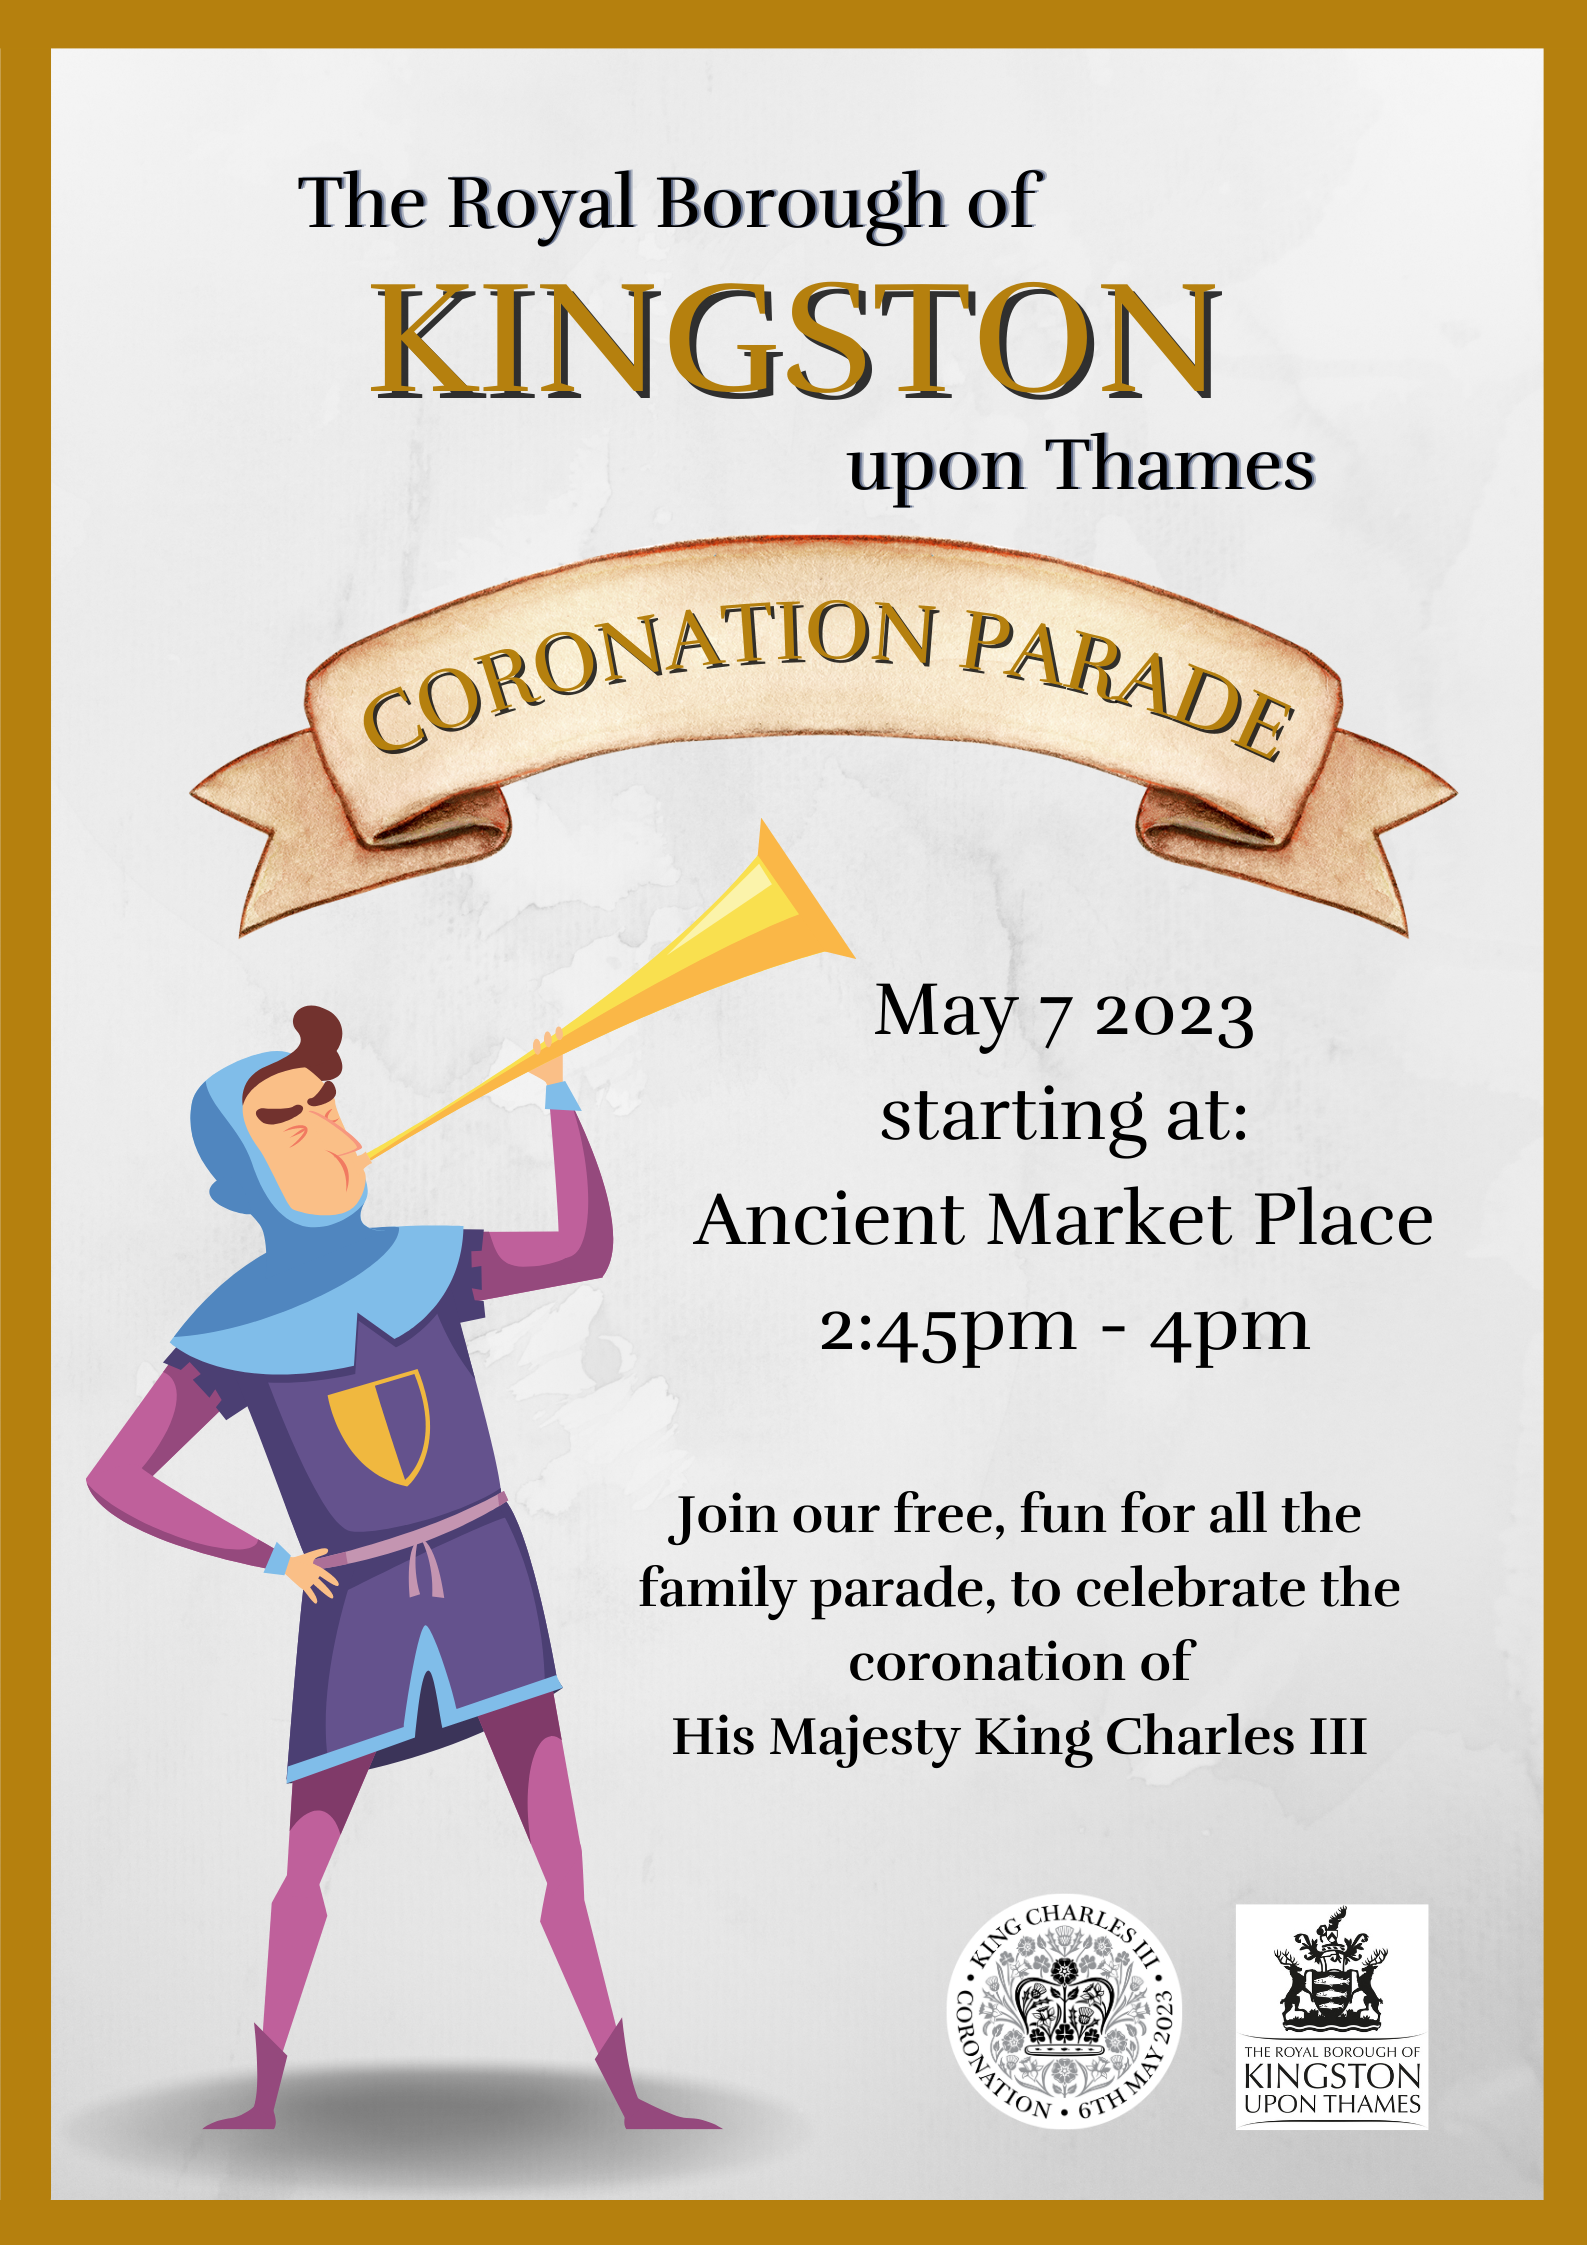 Coronation parade